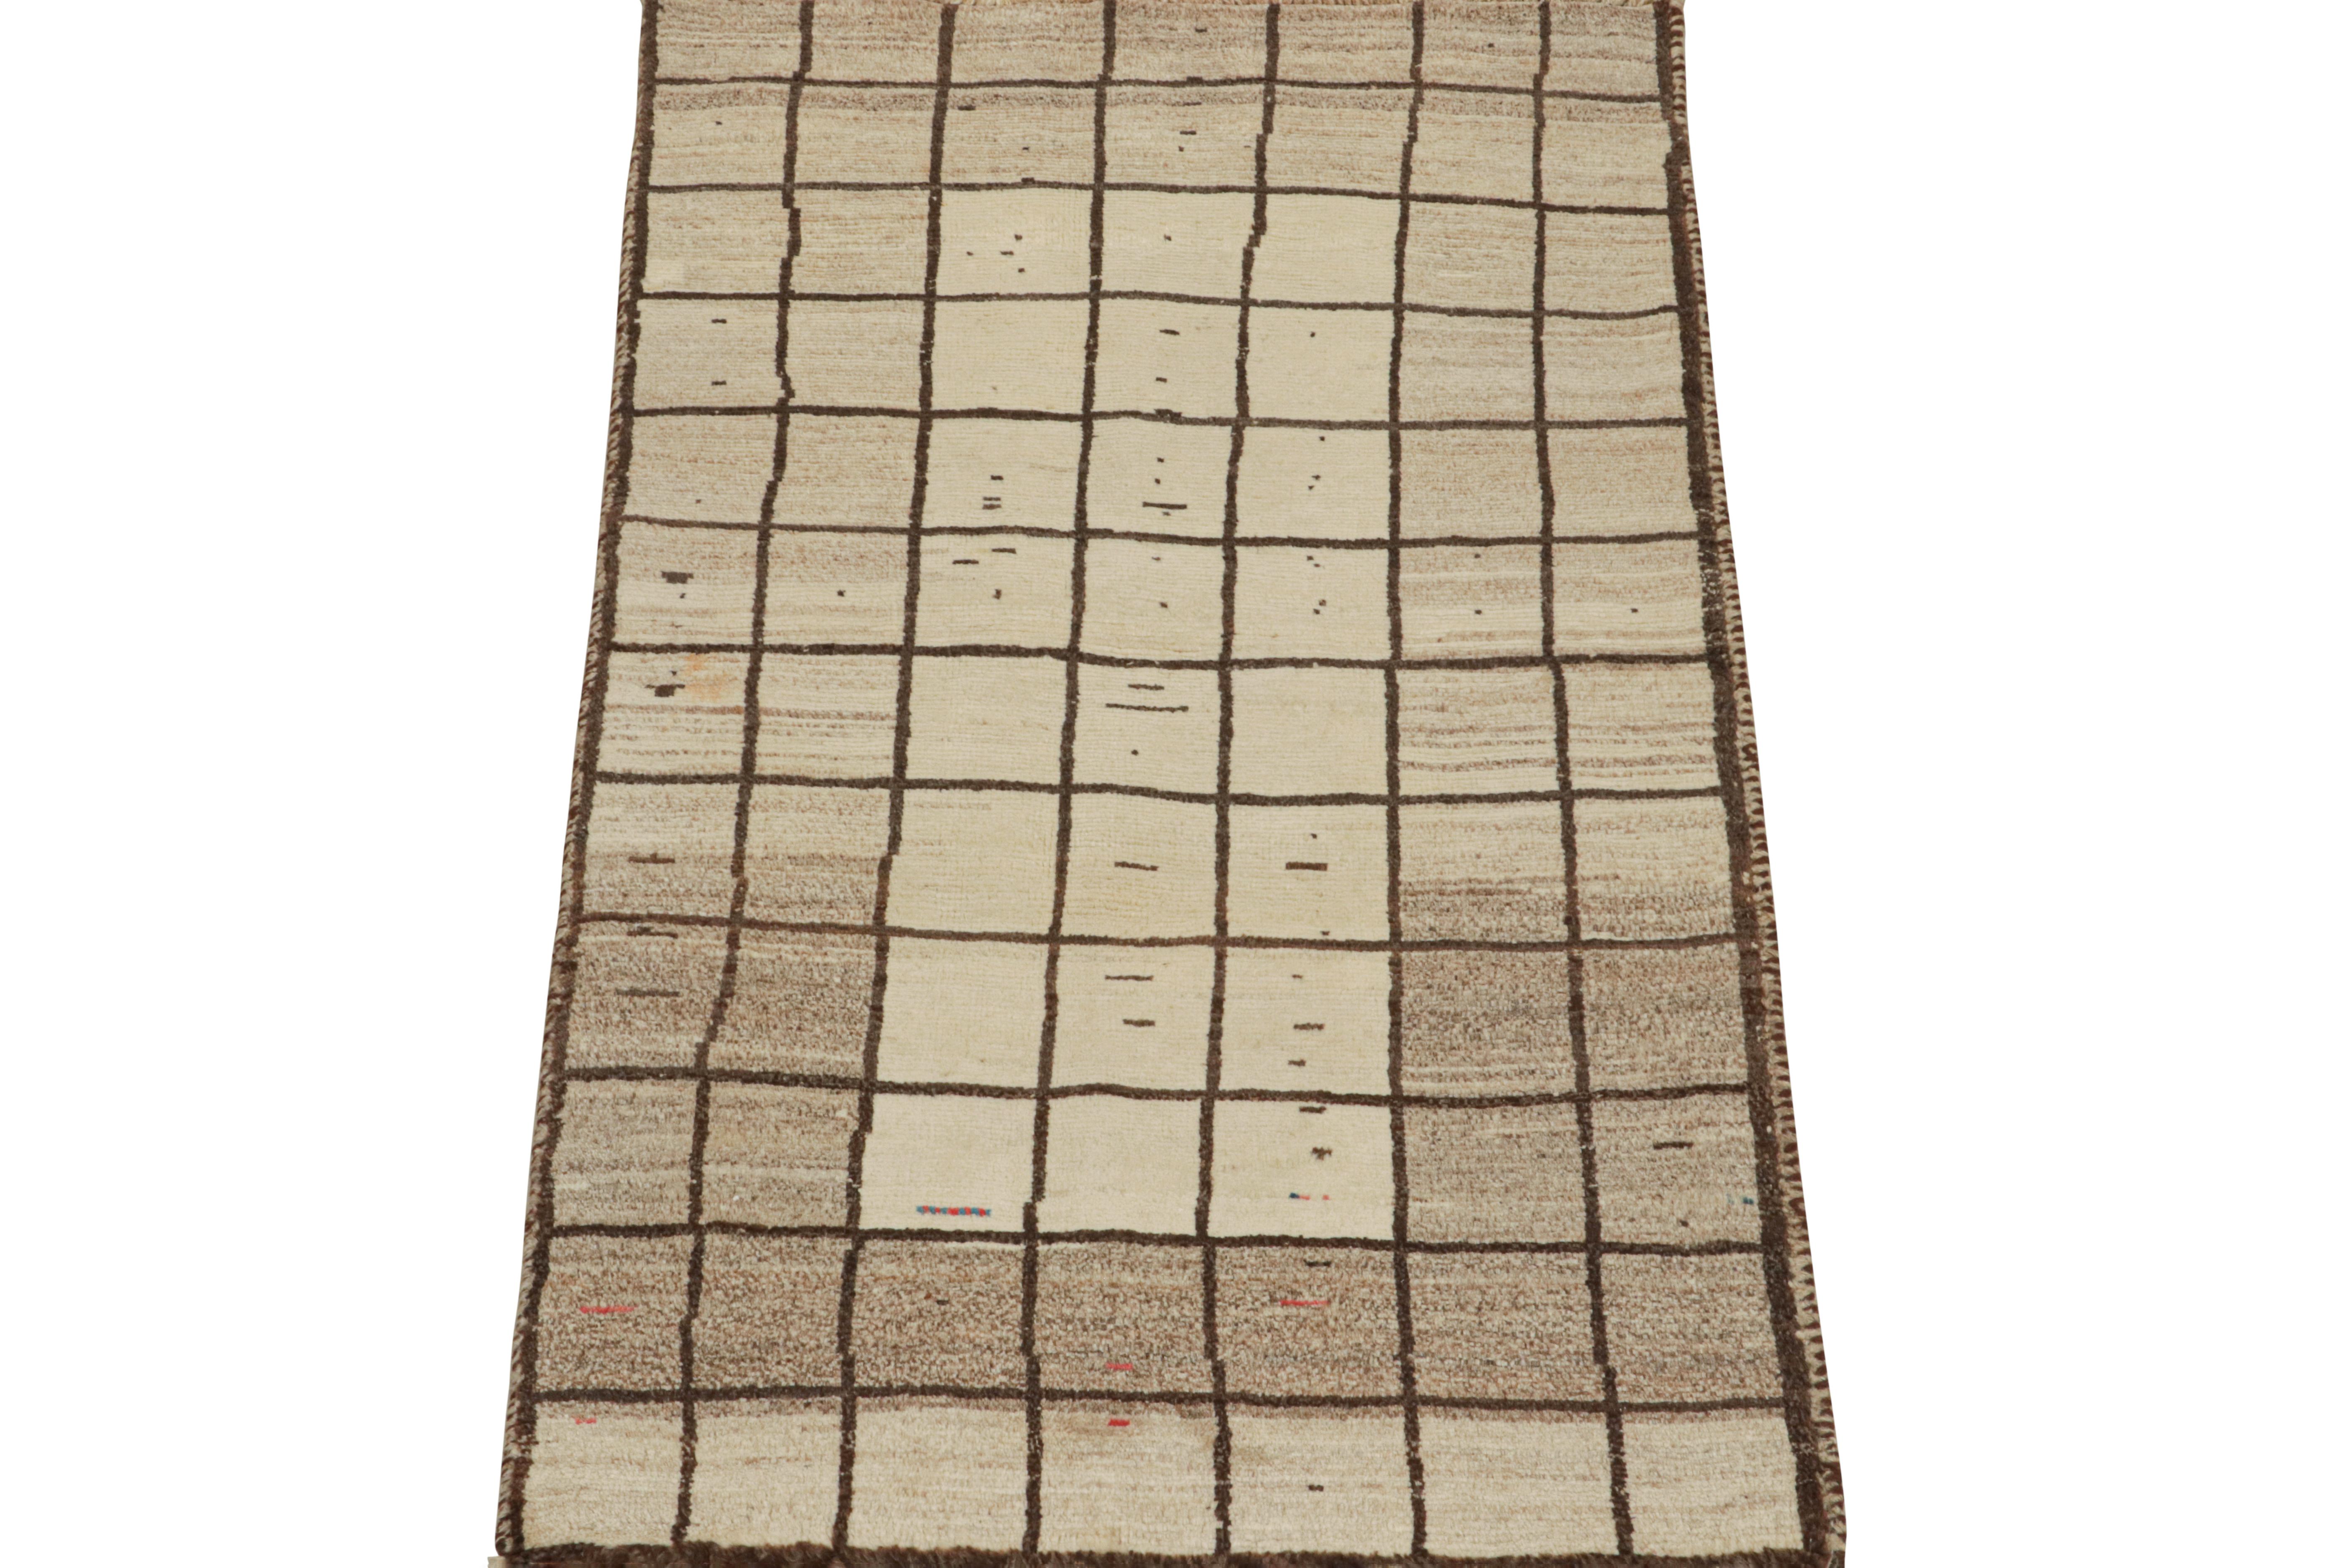 Dieser alte persische 3x6-Läufer ist ein Gabbeh-Teppich, der aus dem Gaschgai-Stamm stammt und um 1950-1960 aus Wolle handgeknüpft wurde.

Sein geometrisches Muster ist ein Spiel aus Beige und Braun in einem Raster mit verspielten Akzenten darin.